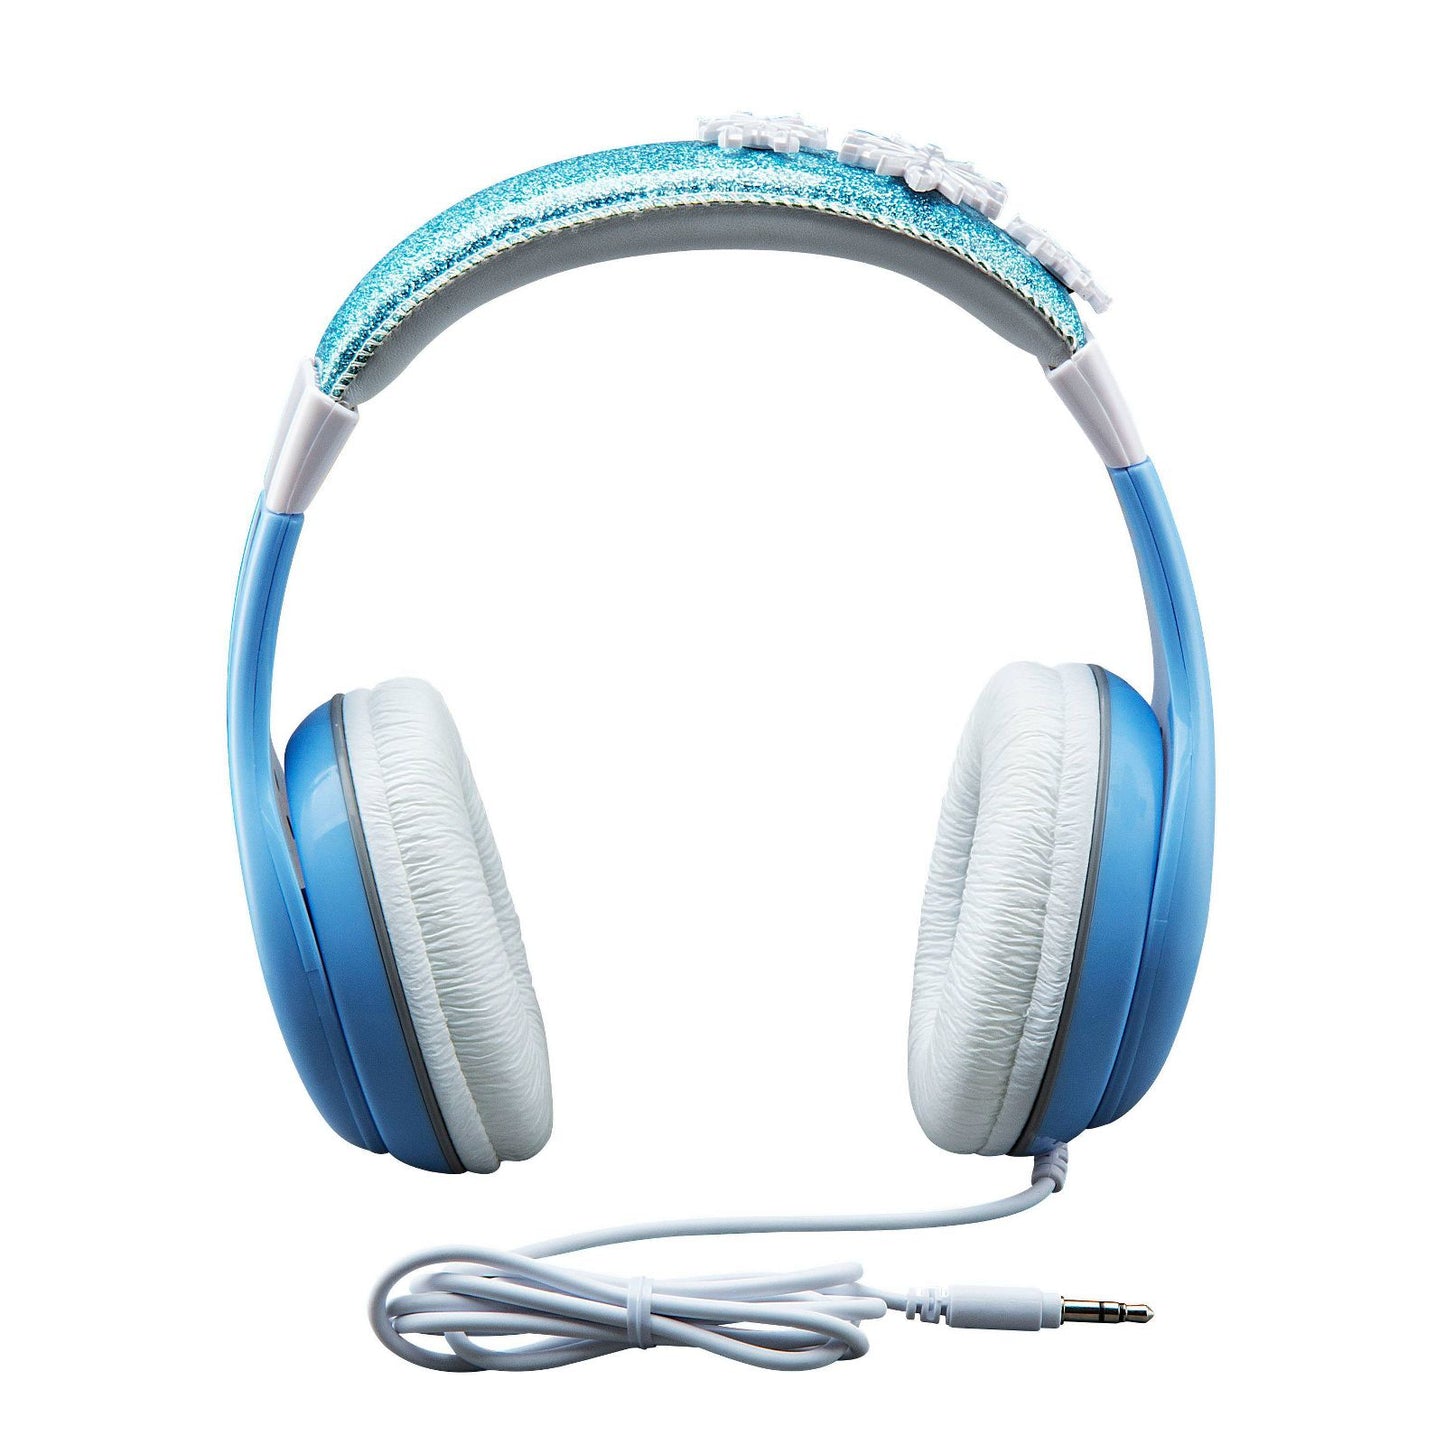 FROZEN2 headphones for kids from DISNEY